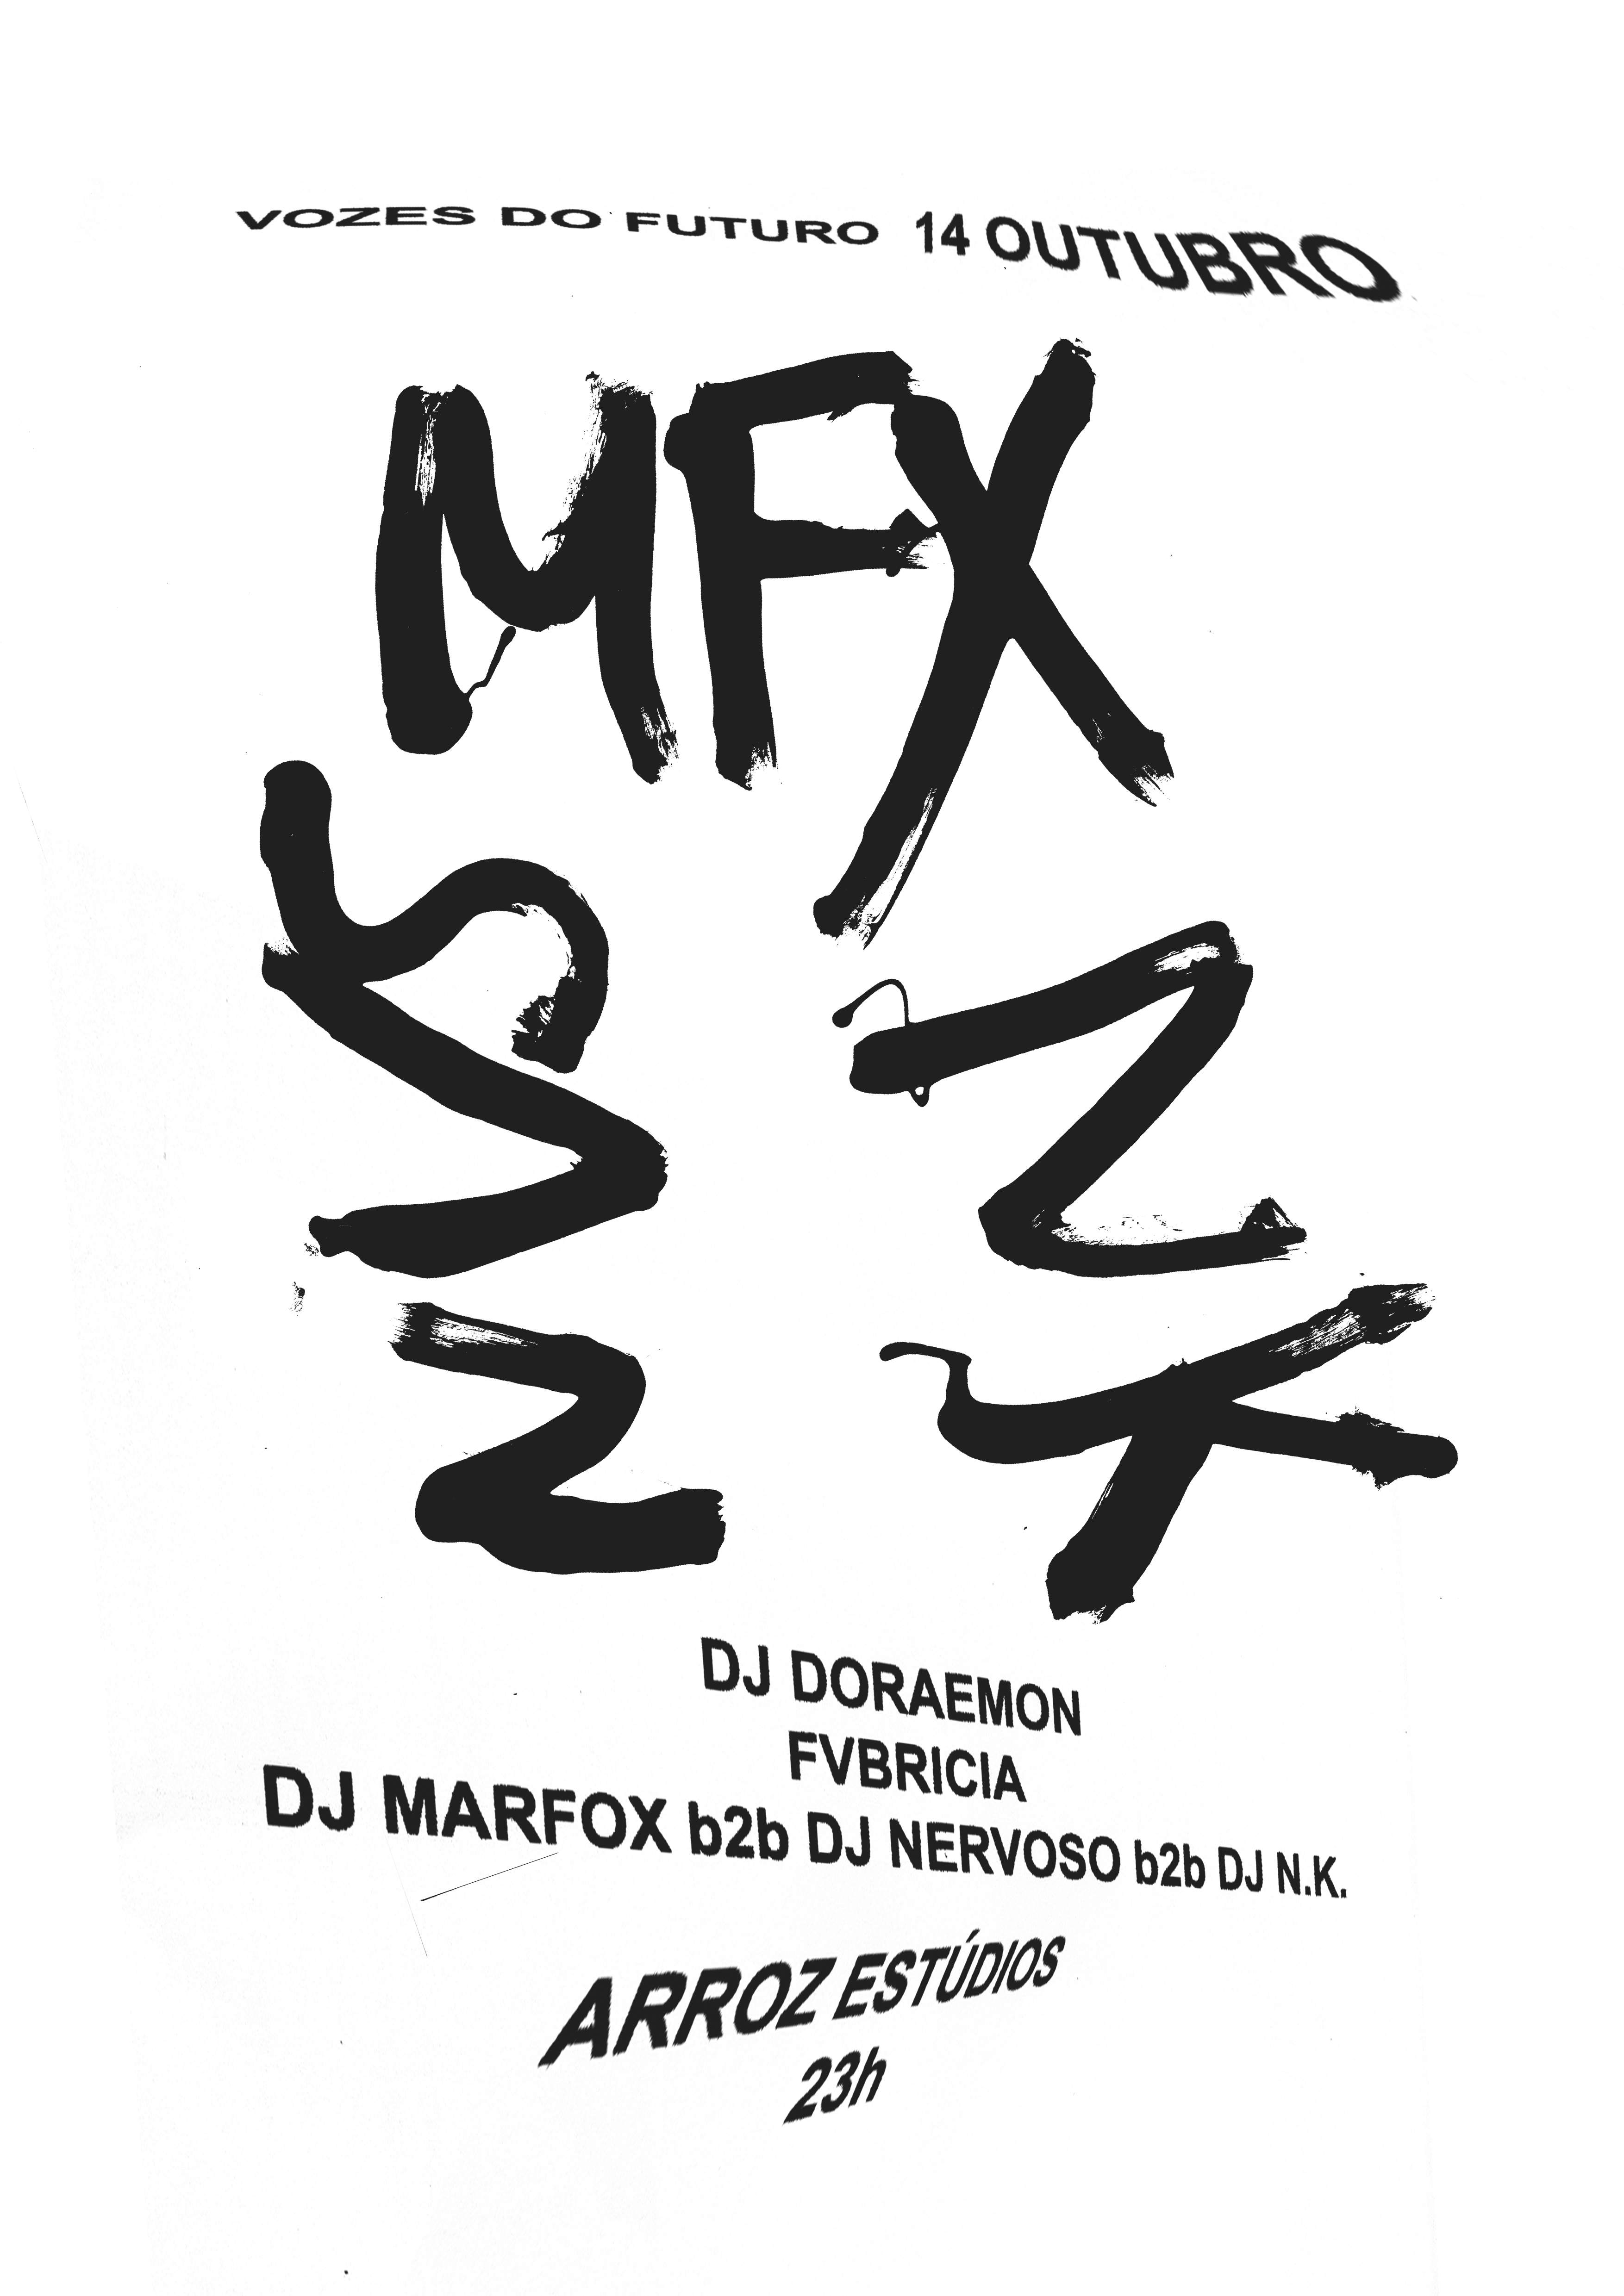 Vozes Do Futuro Closing Party: DJ Marfox b2b DJ Nervoso b2b Dj N.K., Fvbricia, DJ Doraemon - フライヤー表